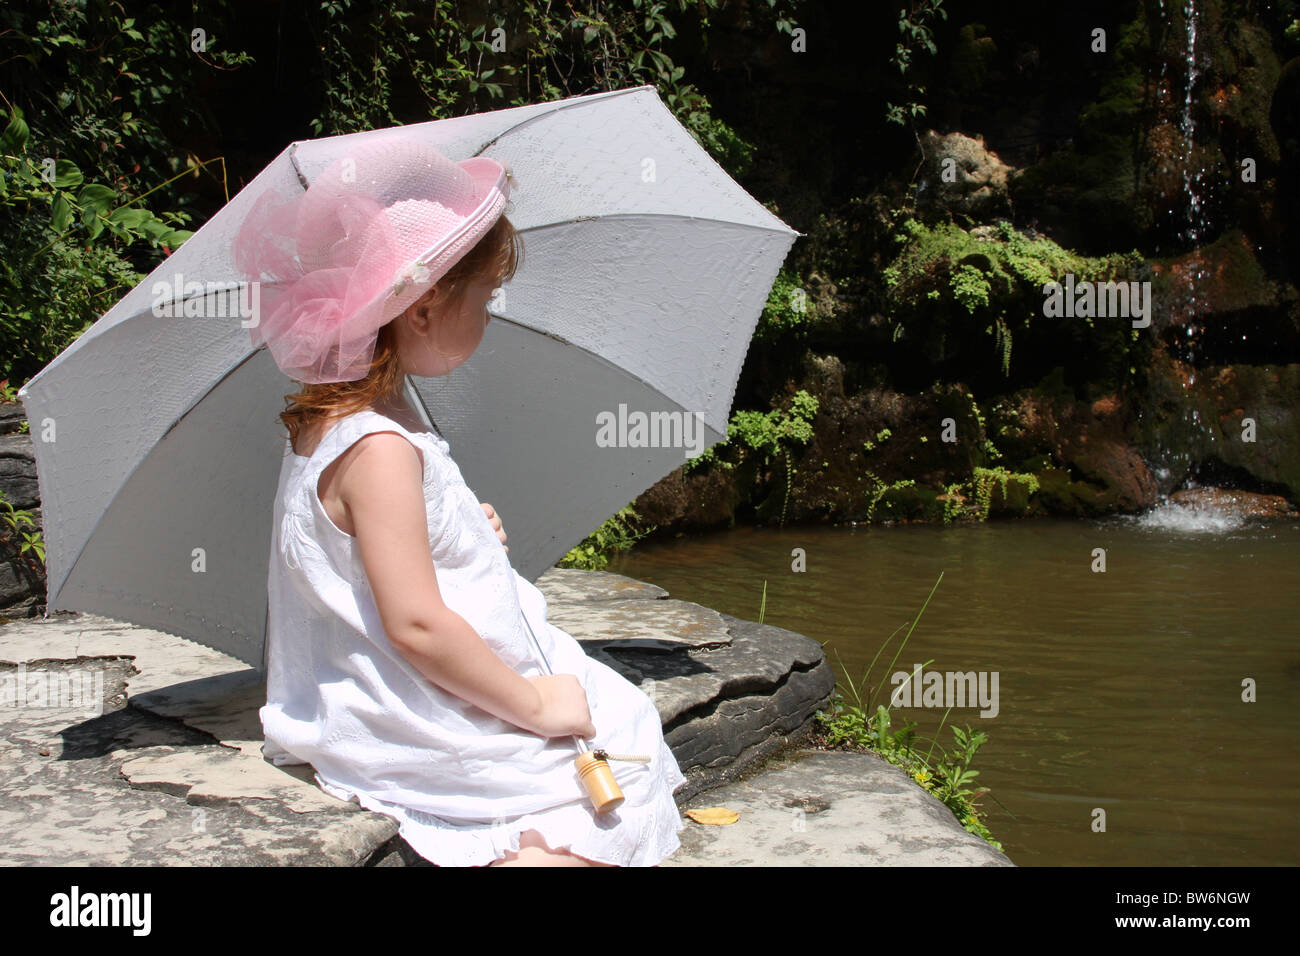 Una joven con un paraguas blanco junto a una cascada de jardín Foto de stock